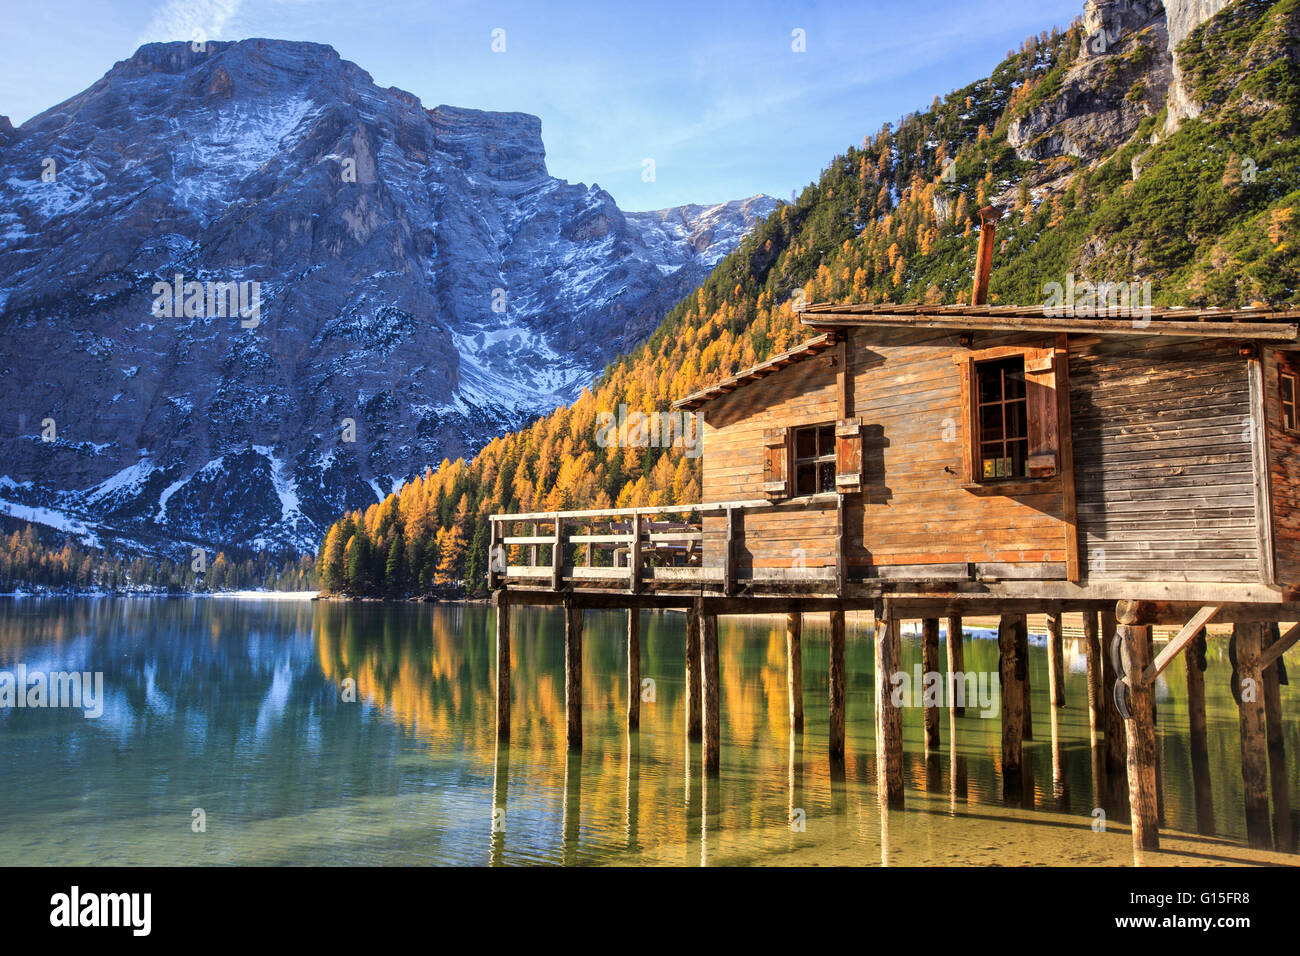 Holzhütte und bunte Wälder spiegeln sich im Pragser Wildsee, natürlichen Park von Fanes Sennes, Bozen, Trentino-Alto Adige, Italien Stockfoto